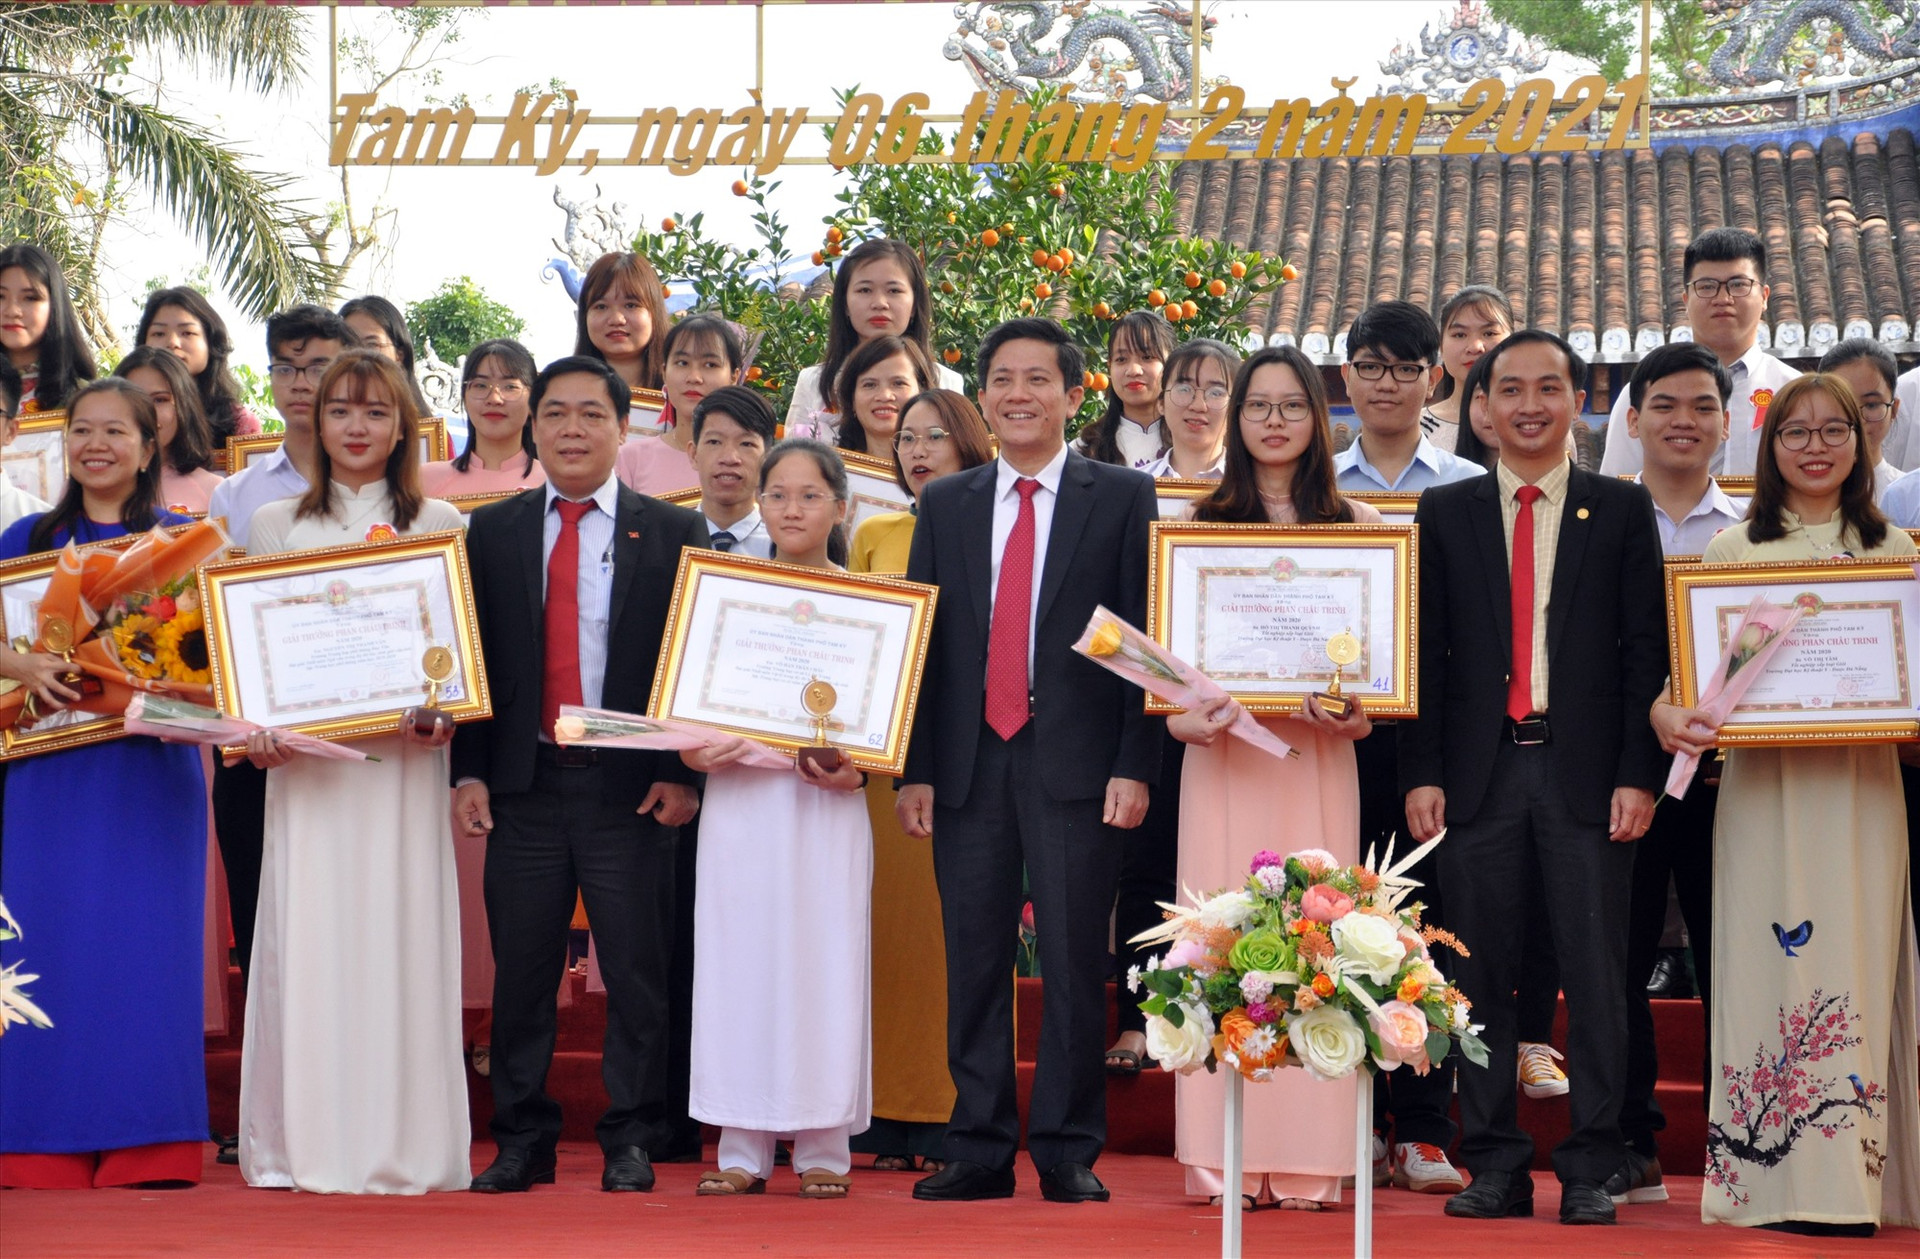 Giải thưởng Phan Châu Trinh tôn vinh gần 1.000 cá nhân đạt thành tích xuất sắc trong 20 năm qua. Ảnh: A.NHI